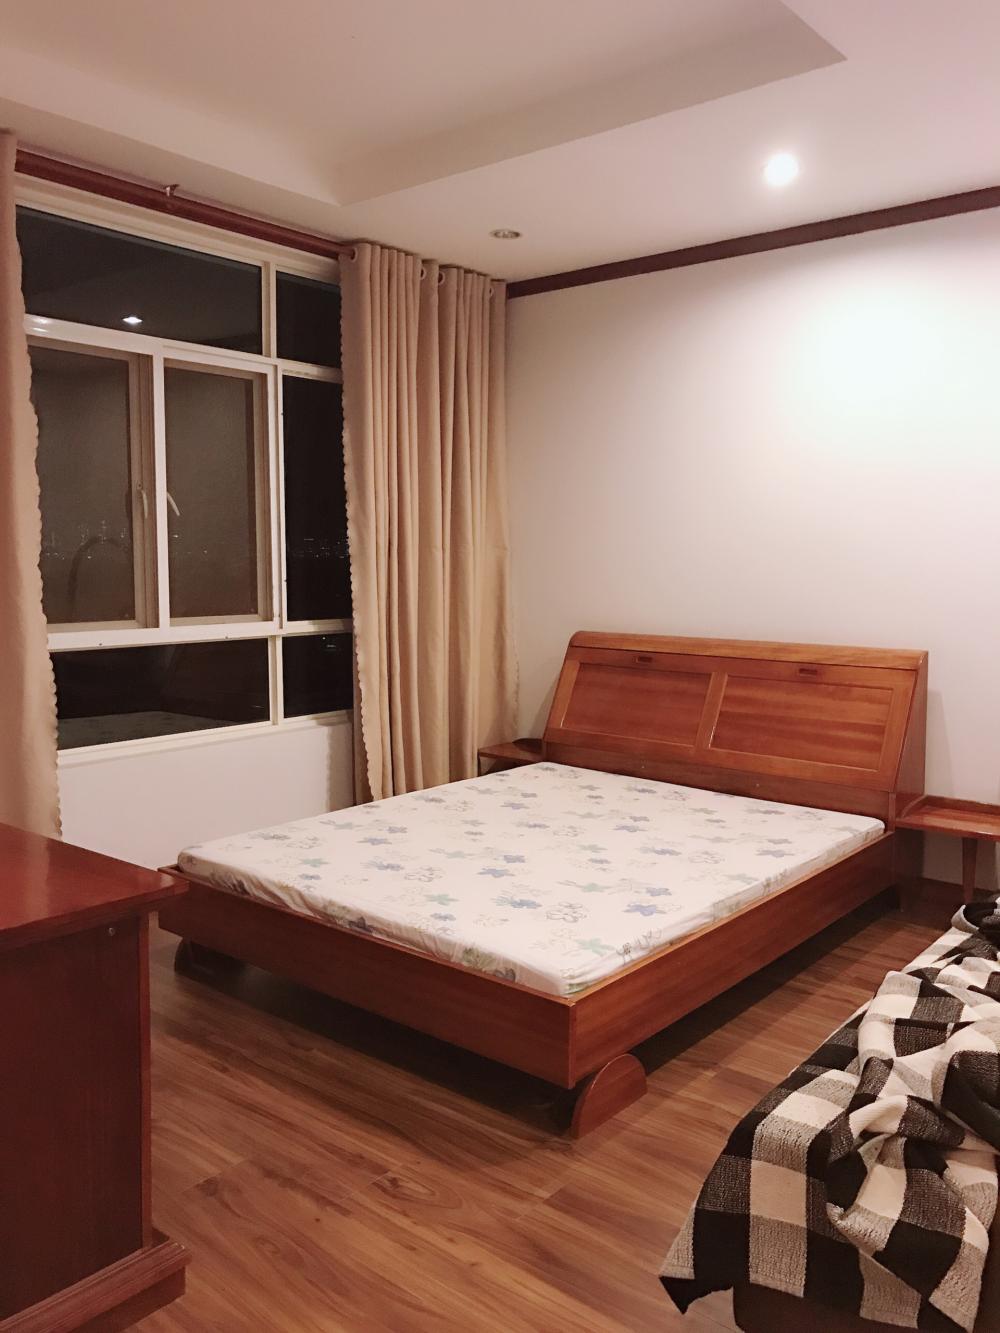 Cho thuê căn hộ Phú Hoàng Anh, 88m2, 2 PN, 2WC (y hình) nội thất cao cấp, giá 11tr/tháng LH:0948393635